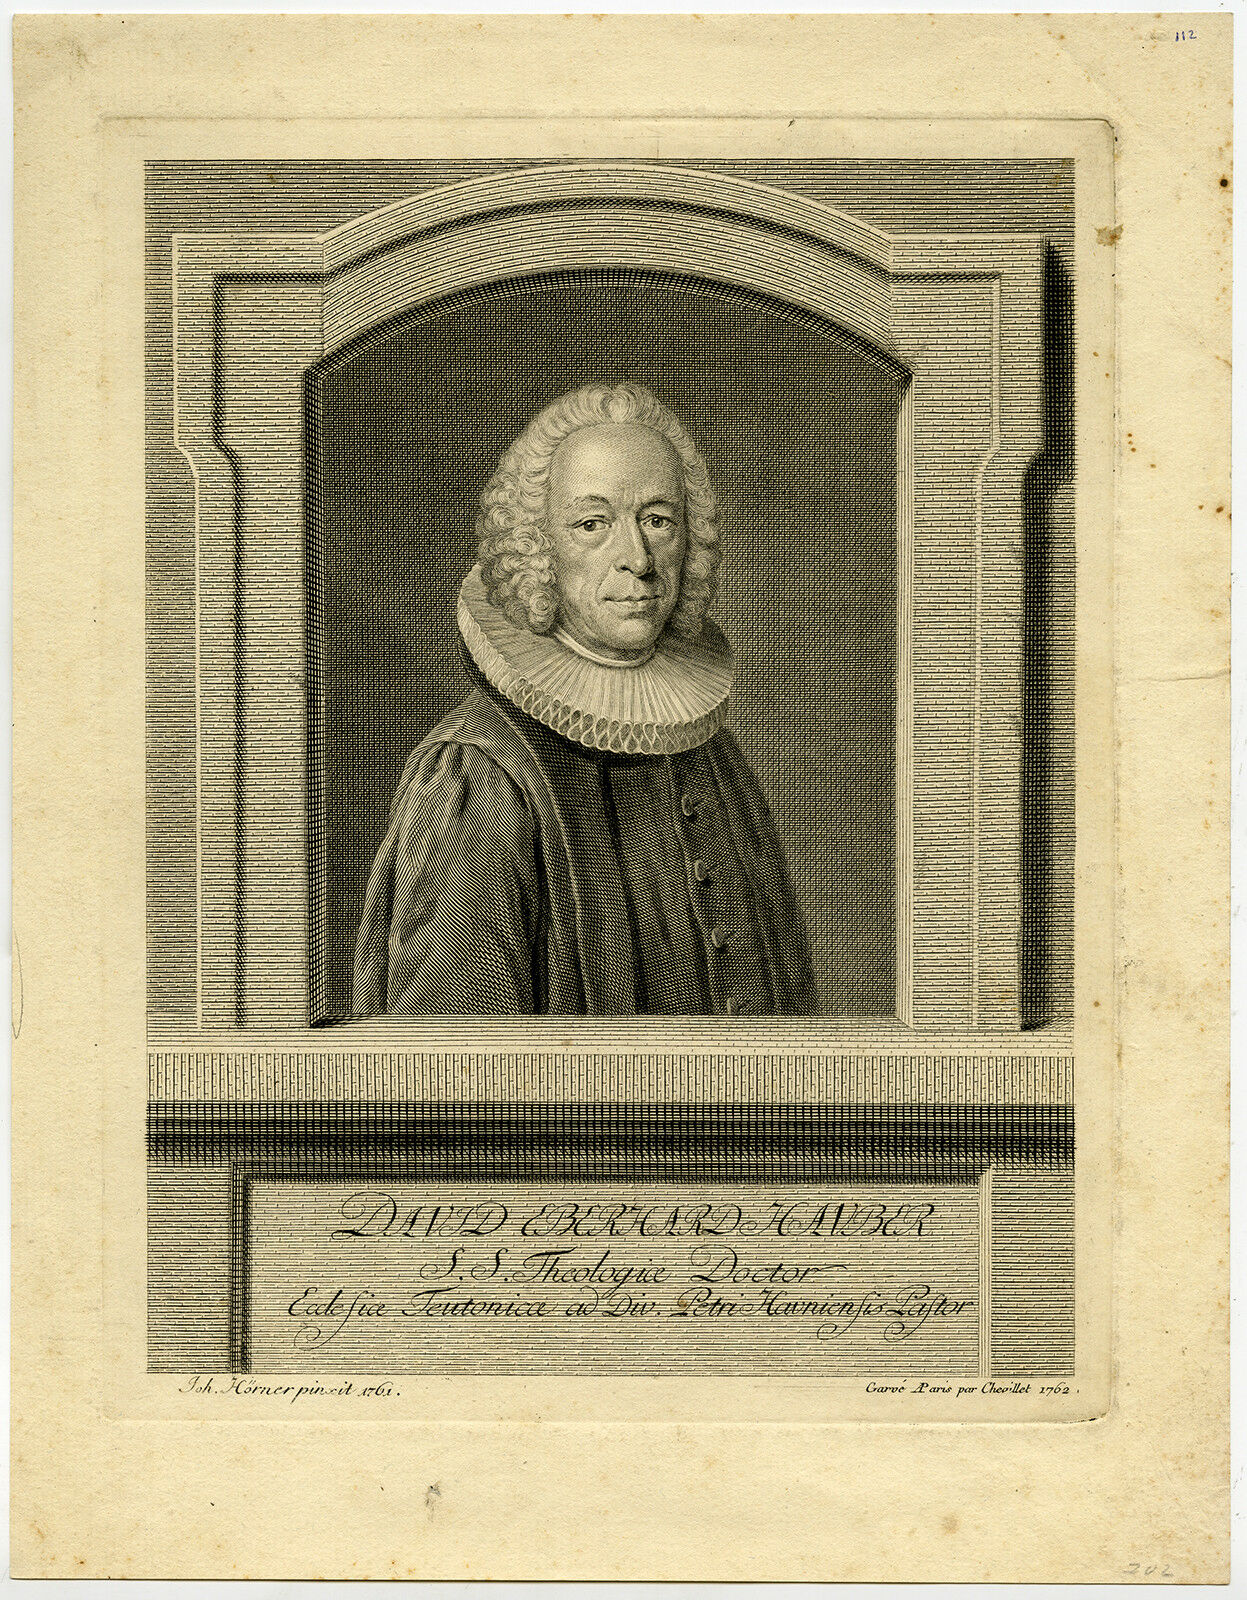 Eberhard David Hauber